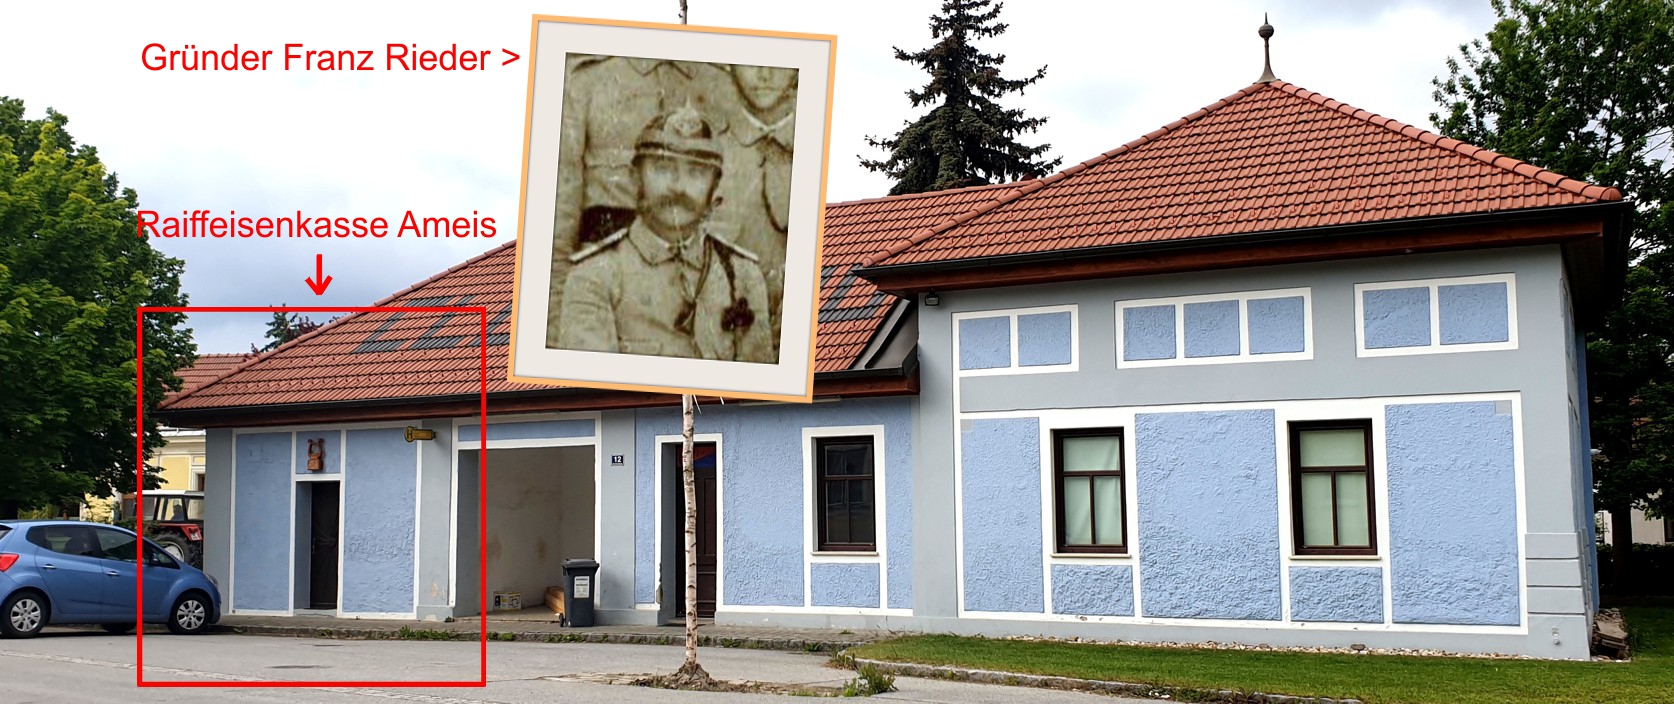 1920 - Vor 100 Jahren - Errichtung der "Raiffeisenkasse Ameis"